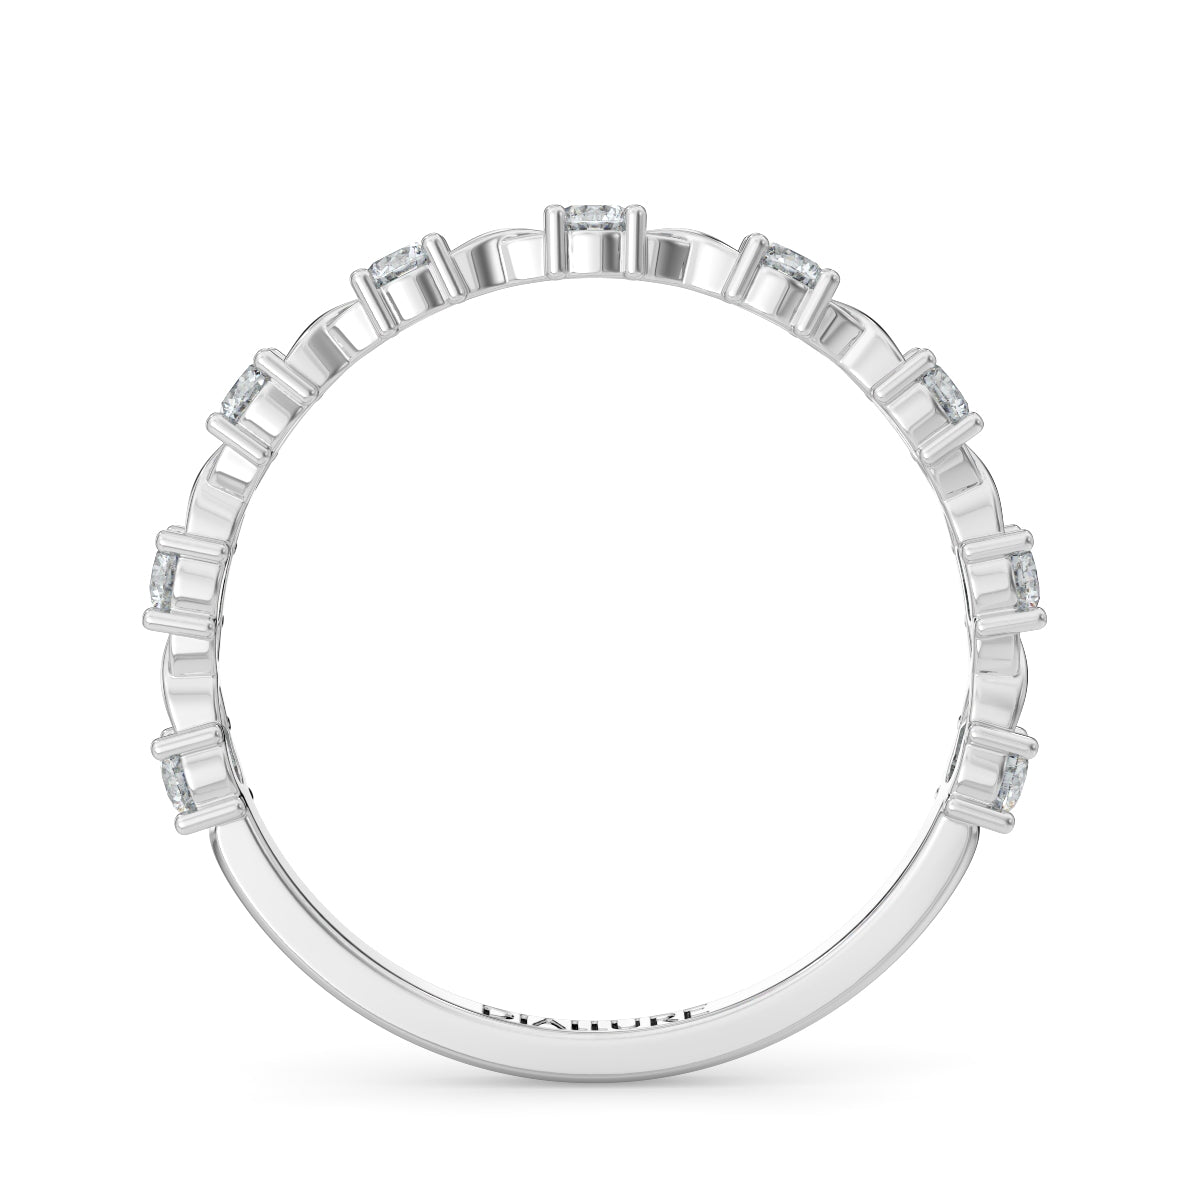 Amanda Wave Ring Round Brilliant Cut Diamond 0.32 carat 